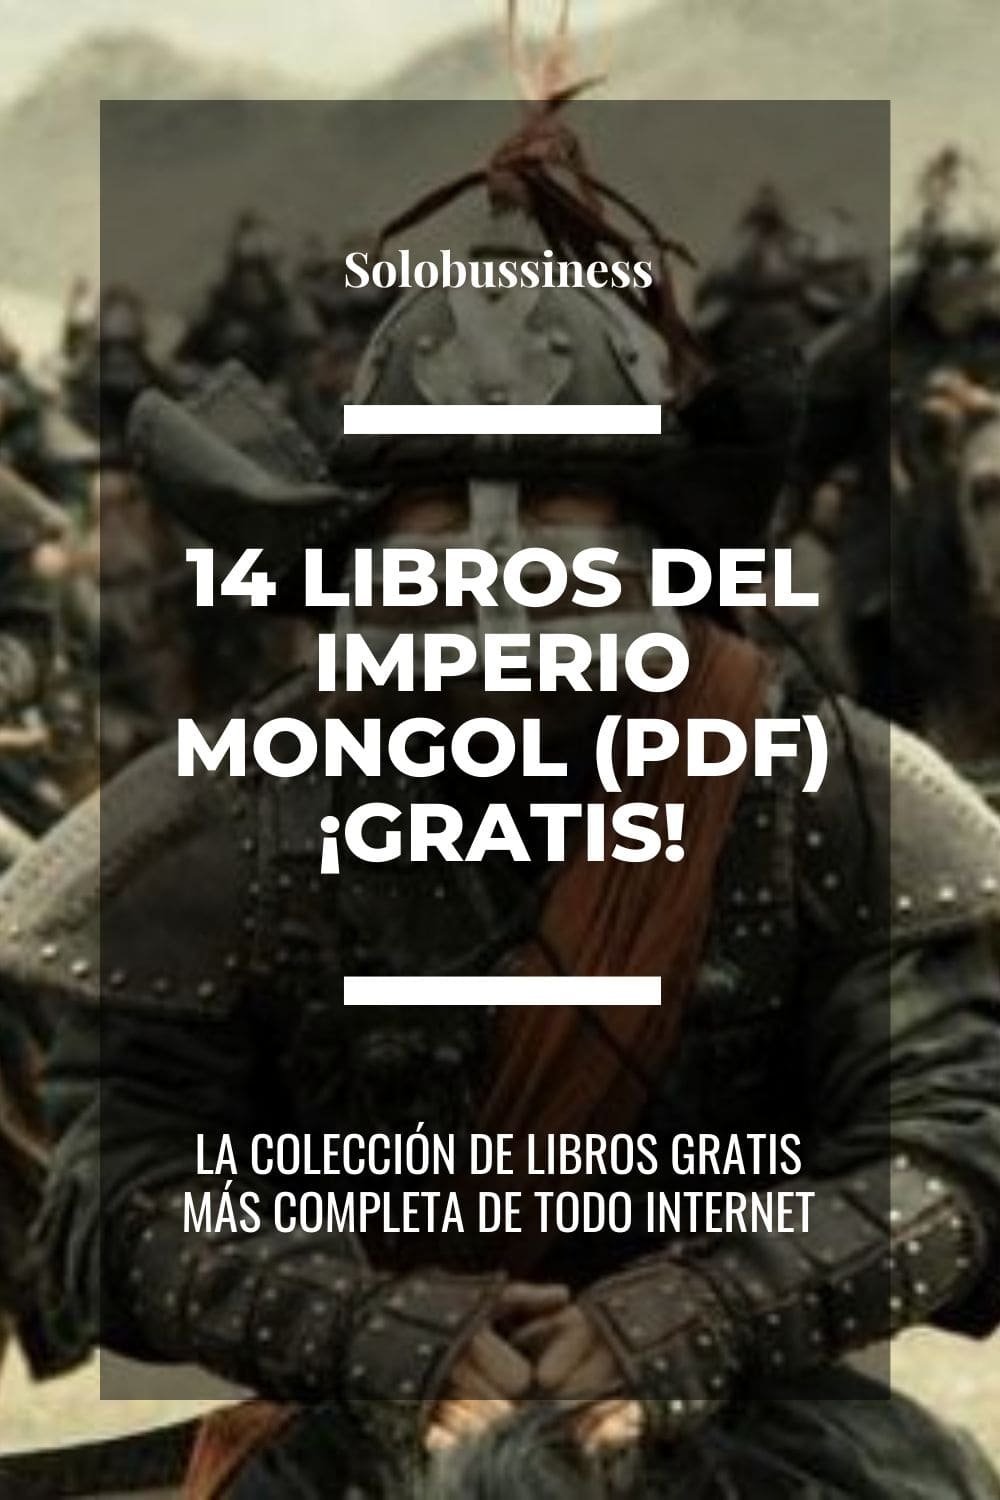 Libros del Imperio Mongol en formato pdf